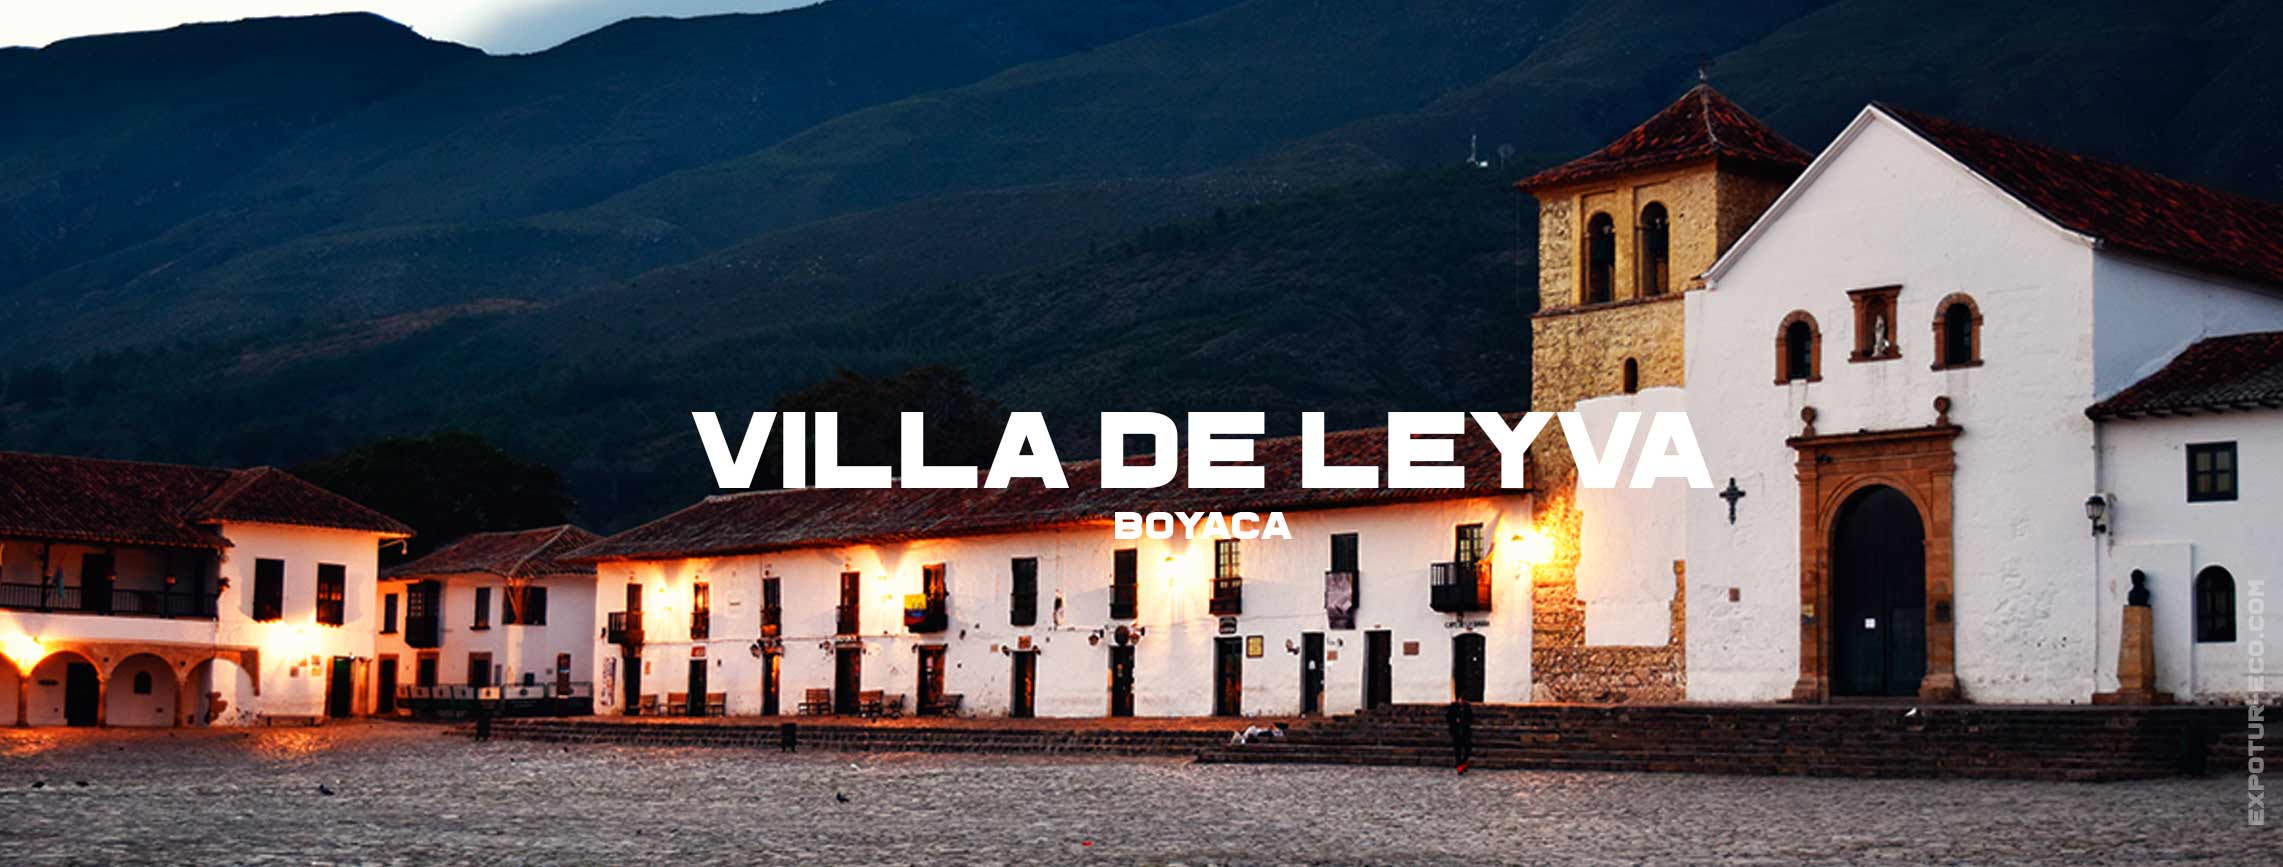 villa-de-leyva-blog-semana-santa-expotur-lugar-turistico-colombia